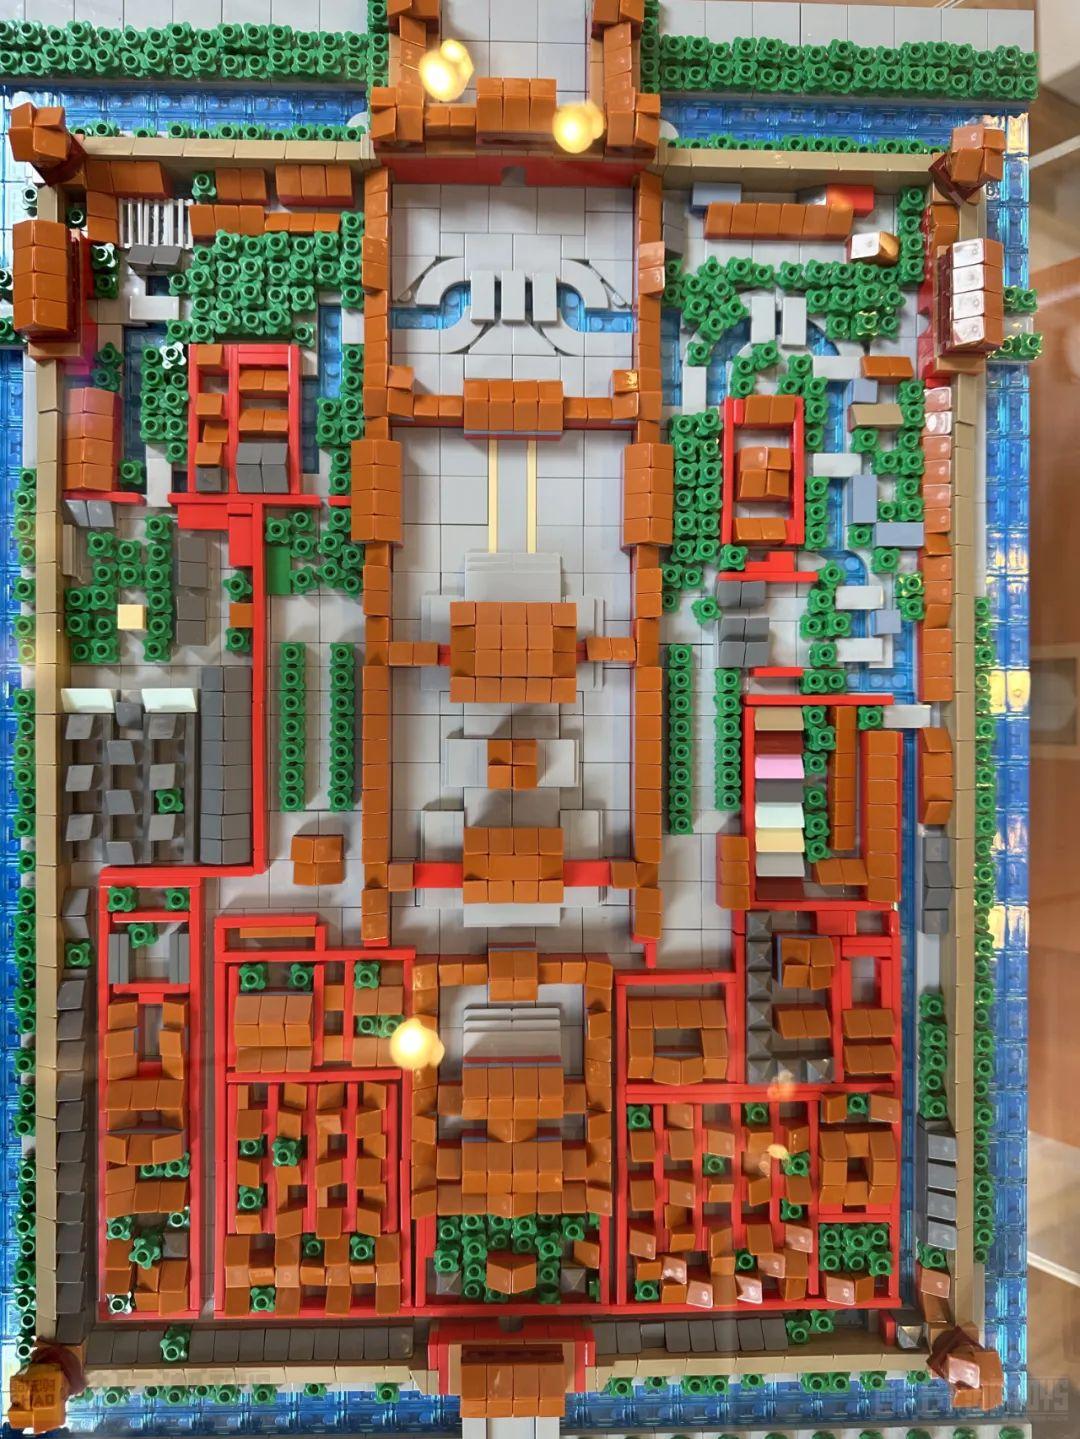 美国国家博物馆Brick City积木展——砖块艺术家沃伦·埃尔斯莫尔个人作品展掠影 -120